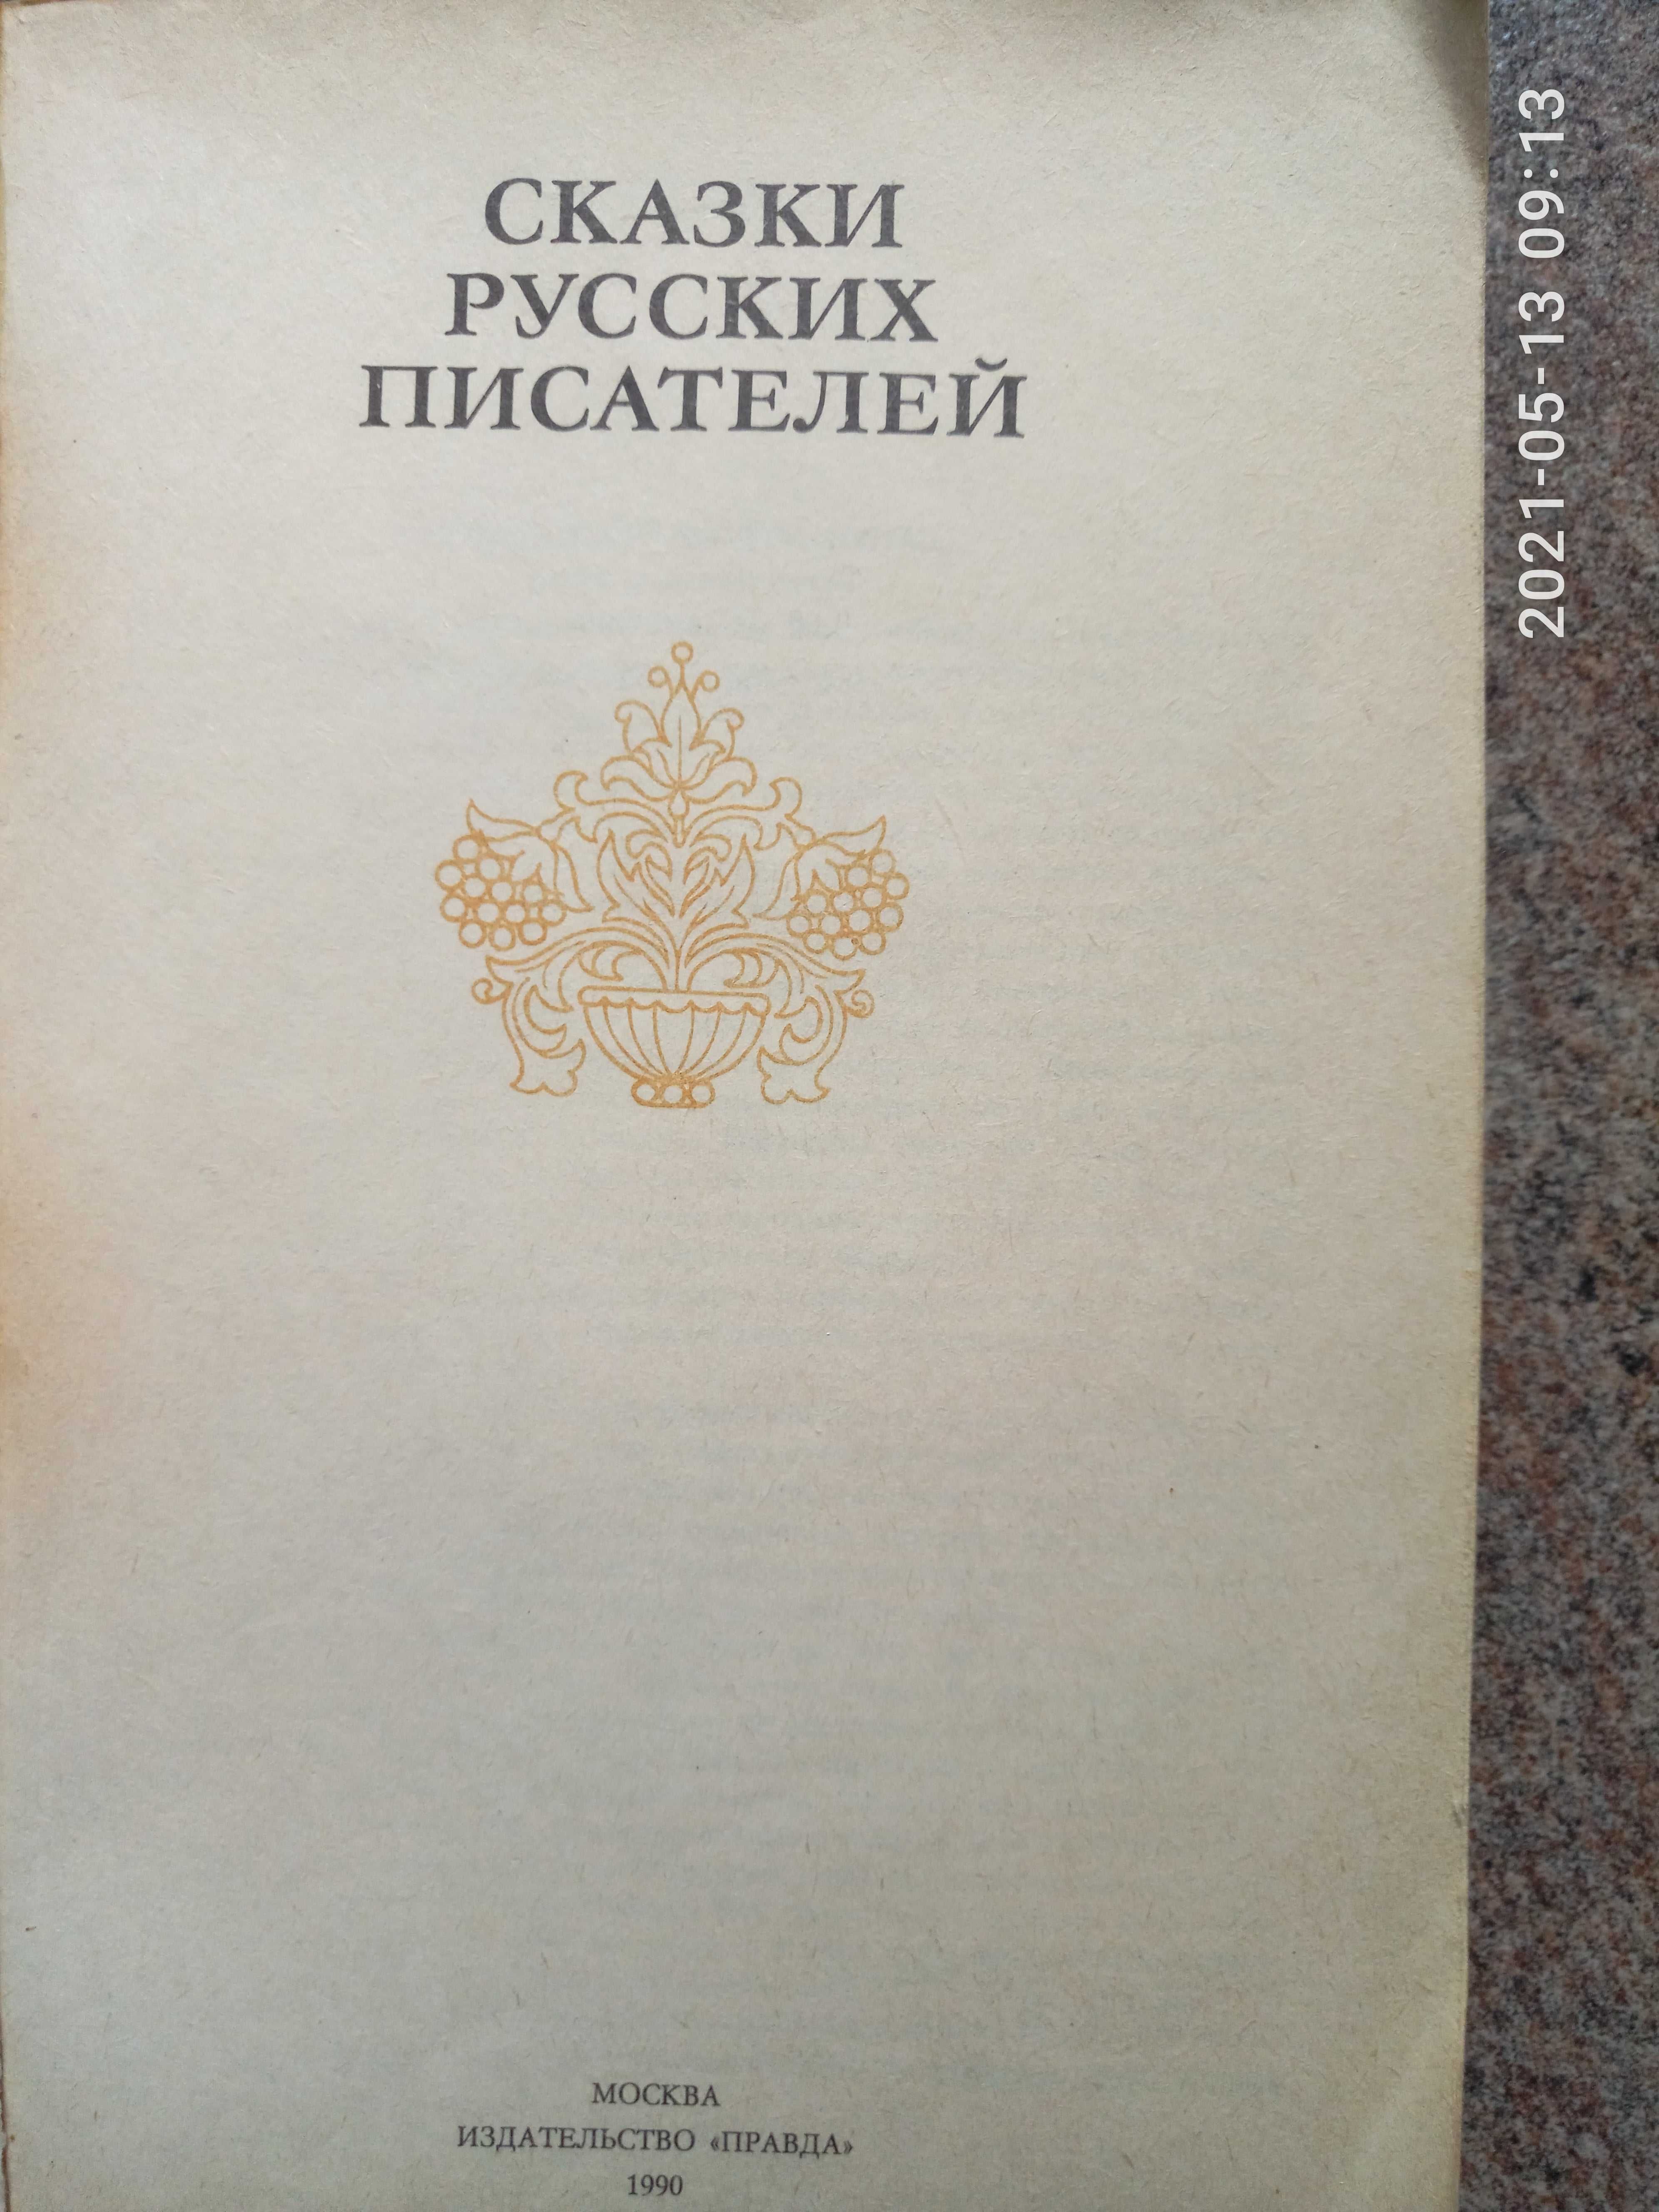 Сказки русских писателей. Сборник  сказок (1990 г)